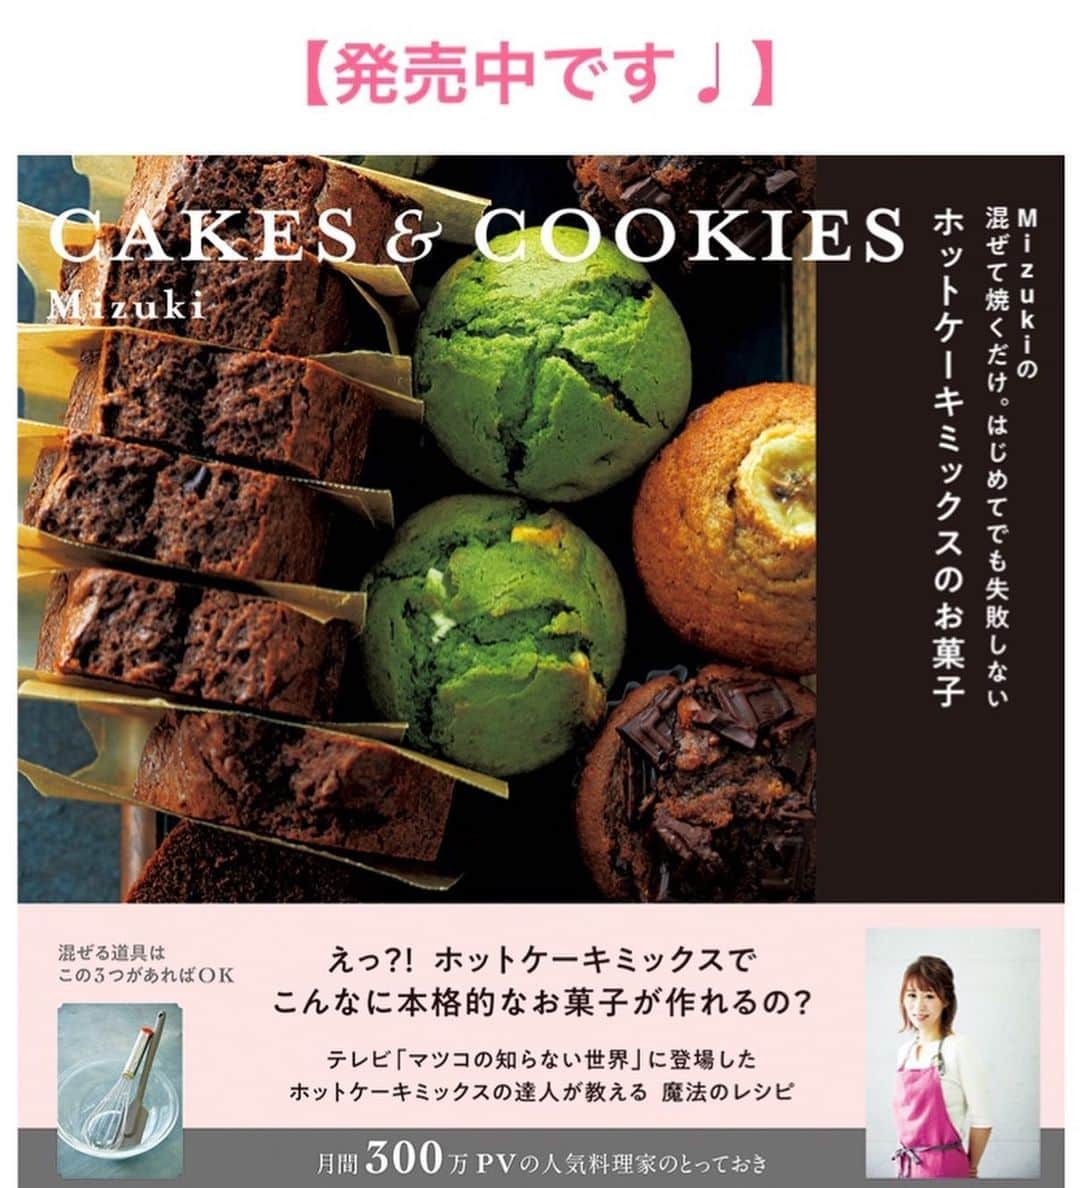 Mizuki【料理ブロガー・簡単レシピ】さんのインスタグラム写真 - (Mizuki【料理ブロガー・簡単レシピ】Instagram)「・﻿ 【レシピ】ーーーーーーーーーーー﻿ ♡めんつゆde鶏たまつけうどん♡﻿ ーーーーーーーーーーーーーーーー﻿ ﻿ ﻿ ﻿ おはようございます(*^^*)﻿ ﻿ 今日ご紹介させていただくのは﻿ 気軽に楽しむつけうどん♡﻿ ﻿ 鶏肉とねぎたっぷりのつけ汁は﻿ めんつゆ使用で失敗なしの﻿ 超簡単レシピです(*´艸`)﻿ 仕上げに卵黄を落として﻿ うどんをからめて召し上がれ♩﻿ ﻿ ﻿ ﻿ ーーーーーーーーーーーーーーーーーーーー﻿ 【2人分】﻿ 冷凍うどん...2玉﻿ 鶏もも肉...1/2枚(150g)﻿ 長ねぎ...1/2本﻿ ごま油...大1/2﻿ ●水・めんつゆ(2倍濃縮)...各100ml﻿ ●生姜チューブ...2cm﻿ 卵黄...2個﻿ ﻿ 1.鶏肉は2cm大に切る。長ねぎは斜め薄切りにする。﻿ 2.鍋にごま油を入れて中火で熱し、1を炒める。鶏肉に火が通ったら●を加えて1分煮る。﻿ 3.冷凍うどんをレンジで加熱して(好みで冷やして)器に盛る。2を別の器に盛り、卵黄を加えて添える。﻿ ーーーーーーーーーーーーーーーーーーーー﻿ ﻿ ﻿ ﻿ 《ポイント》﻿ ♦︎余った卵白は置いておいてスープを作る時に加えています☆﻿ ♦︎めんつゆが3倍濃縮、4倍濃縮の場合は、それぞれの''つけつゆの濃さ''に合わせて下さい♩﻿ ♦︎鶏肉のかわりに豚バラ薄切り肉で作っても美味しいです♩﻿ ﻿ ﻿ ﻿ ﻿ ﻿ ﻿ ﻿ ﻿ 🔻入荷しました🔻﻿ ストーリーにリンク貼っています🙇‍♀️﻿ ＿＿＿＿＿＿＿＿＿＿＿＿＿＿＿＿＿＿＿﻿ 📕\ \ 新刊発売中 / /📕﻿ 簡単・時短！ 毎日のごはんがラクになる﻿ ✨🦋 【 #Mizukiの今どき和食 】🦋✨﻿ ＿＿＿＿＿＿＿＿＿＿＿＿＿＿＿＿＿＿＿﻿ ﻿ なるべく少ない材料で﻿ 手間も時間も省きながら﻿ 簡単にできるおいしい和食レシピ♩﻿ 簡単に失敗なくマスターできる一冊で﻿ もっと気軽に、カジュアルに﻿ 和食を楽しんで下さいね(*^^*)﻿ ﻿ ﻿ ーーー ⭐️PART.1 メインおかず ⭐️ーーー﻿ 素材別にレシピをご紹介しています♩﻿ 和食の定番から新定番まで﻿ どれも押さえておきたいメニューばかり。﻿ 肉じゃがはフライパンで！焼き豚はレンジで！﻿ ぶり大根は切り身を使って手軽に作ります♩﻿ ﻿ ーーー ☘️PART.2 サブおかず ☘️ーーー﻿ 年中手に入るお手頃野菜と﻿ 乾物や大豆、こんにゃくなどを使った﻿ 副菜レシピをたっぷり掲載！！﻿ 普段SNSではメインおかずばかりなので﻿ 本では副菜にも力を入れています(*^^*)﻿ ﻿ ーーー 🌸PART.3 ごはんと汁物 🌸ーーー﻿ ささっと作れる丼と麺、﻿ みんなで食べたいいなり寿司や﻿ 手巻きごはんもご紹介！﻿ 複数の炊き込みごはんと﻿ 味噌汁&和風スープも盛りだくさん！﻿ ﻿ ﻿ 各レシピのポイントは﻿ 【写真付きで丁寧に解説】﻿ 副菜レシピもたっぷりなので﻿ 【メインページに副菜メモもつけました】﻿ ＊このメインにはこの副菜が合いますよ〜﻿ という献立の提案です(*^^*)﻿ 【その他コラムも充実】﻿ 全127品中ほぼ全て﻿ 【本だけのレシピです！】﻿ ＿＿＿＿＿＿＿＿＿＿＿＿＿＿＿＿＿＿＿﻿ ﻿ ﻿ ﻿ ﻿ ﻿ ＿＿＿＿＿＿＿＿＿＿＿＿＿＿＿＿＿﻿ 🎀発売中🎀﻿ 【#ホットケーキミックスのお菓子 】﻿ ﻿ 一冊まるっとホケミスイーツ♩﻿ 普段のおやつから﻿ 特別な日にも使えるレシピを﻿ この一冊に詰め込みました(*^^*)﻿ ホットケーキミックスを使えば﻿ 簡単に本格的なお菓子が作れますよ♡﻿ ＿＿＿＿＿＿＿＿＿＿＿＿＿＿＿＿＿﻿ ﻿ ⭐️ストーリー、ハイライト、プロフ画面に﻿ 本のURLを貼らせていただいております♩﻿ →(@mizuki_31cafe )﻿ ﻿ ﻿ ﻿ ﻿ ﻿ #つけうどん#卵黄#冷凍うどん#鶏肉#ねぎ#うちで過ごそう#おうち時間#Mizuki#簡単レシピ#時短レシピ#節約レシピ#料理#レシピ#フーディーテーブル#マカロニメイト#おうちごはん#おうちカフェ#デリスタグラマー#料理好きな人と繋がりたい#おうちごはんlover#foodpic#follow#cooking#recipe#lin_stagrammer#stayhome#鶏たまつけうどんm」5月22日 8時24分 - mizuki_31cafe